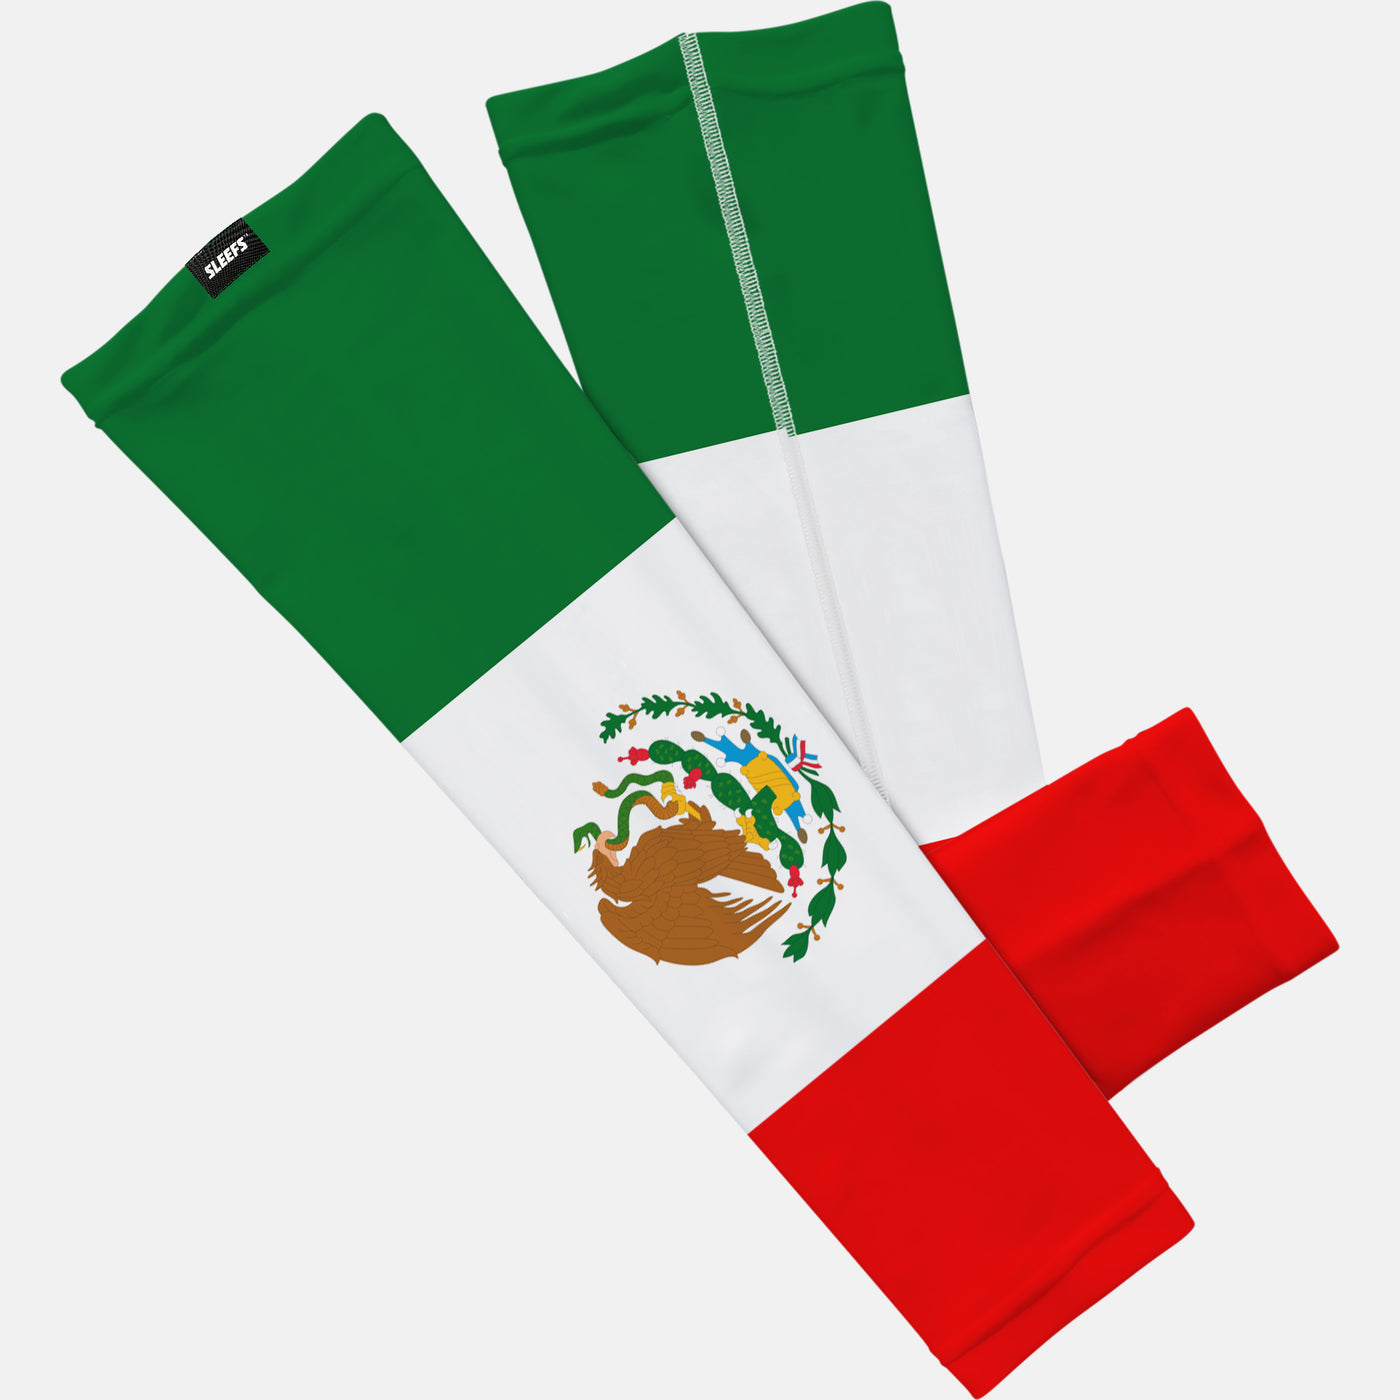 Mexico Arm sleeve